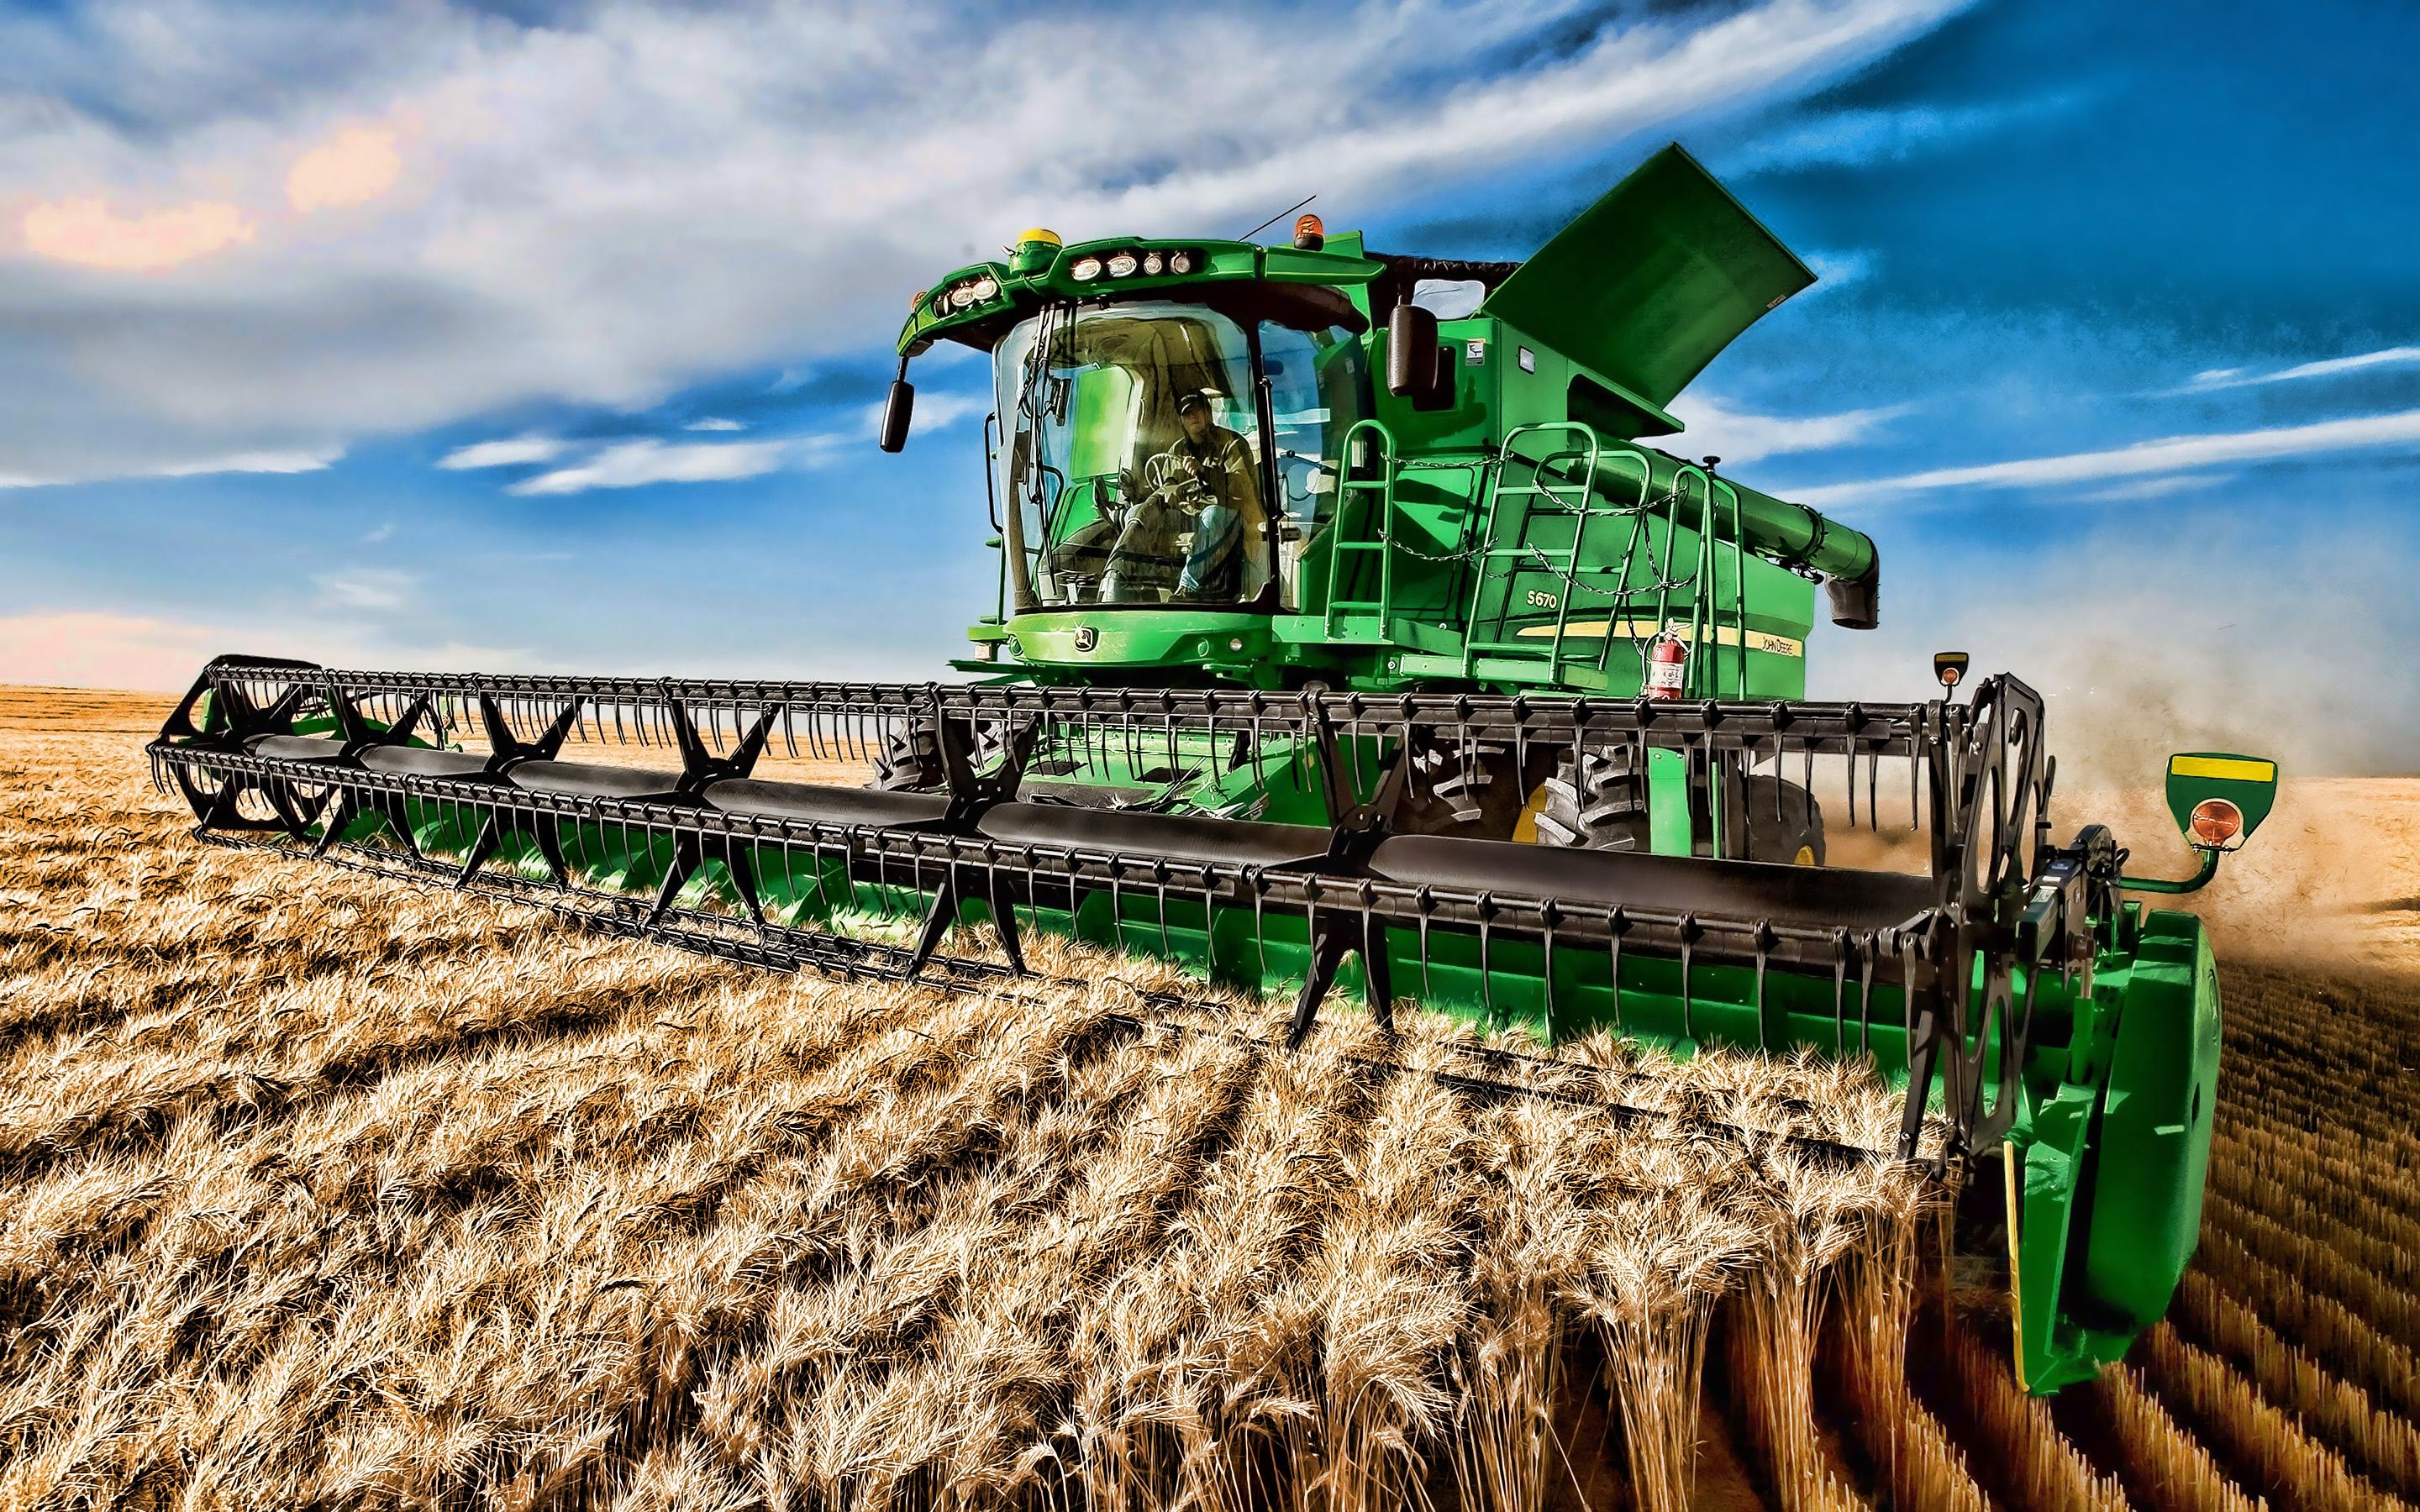 Download wallpaper John Deere S grain harvesting, 2019 combines